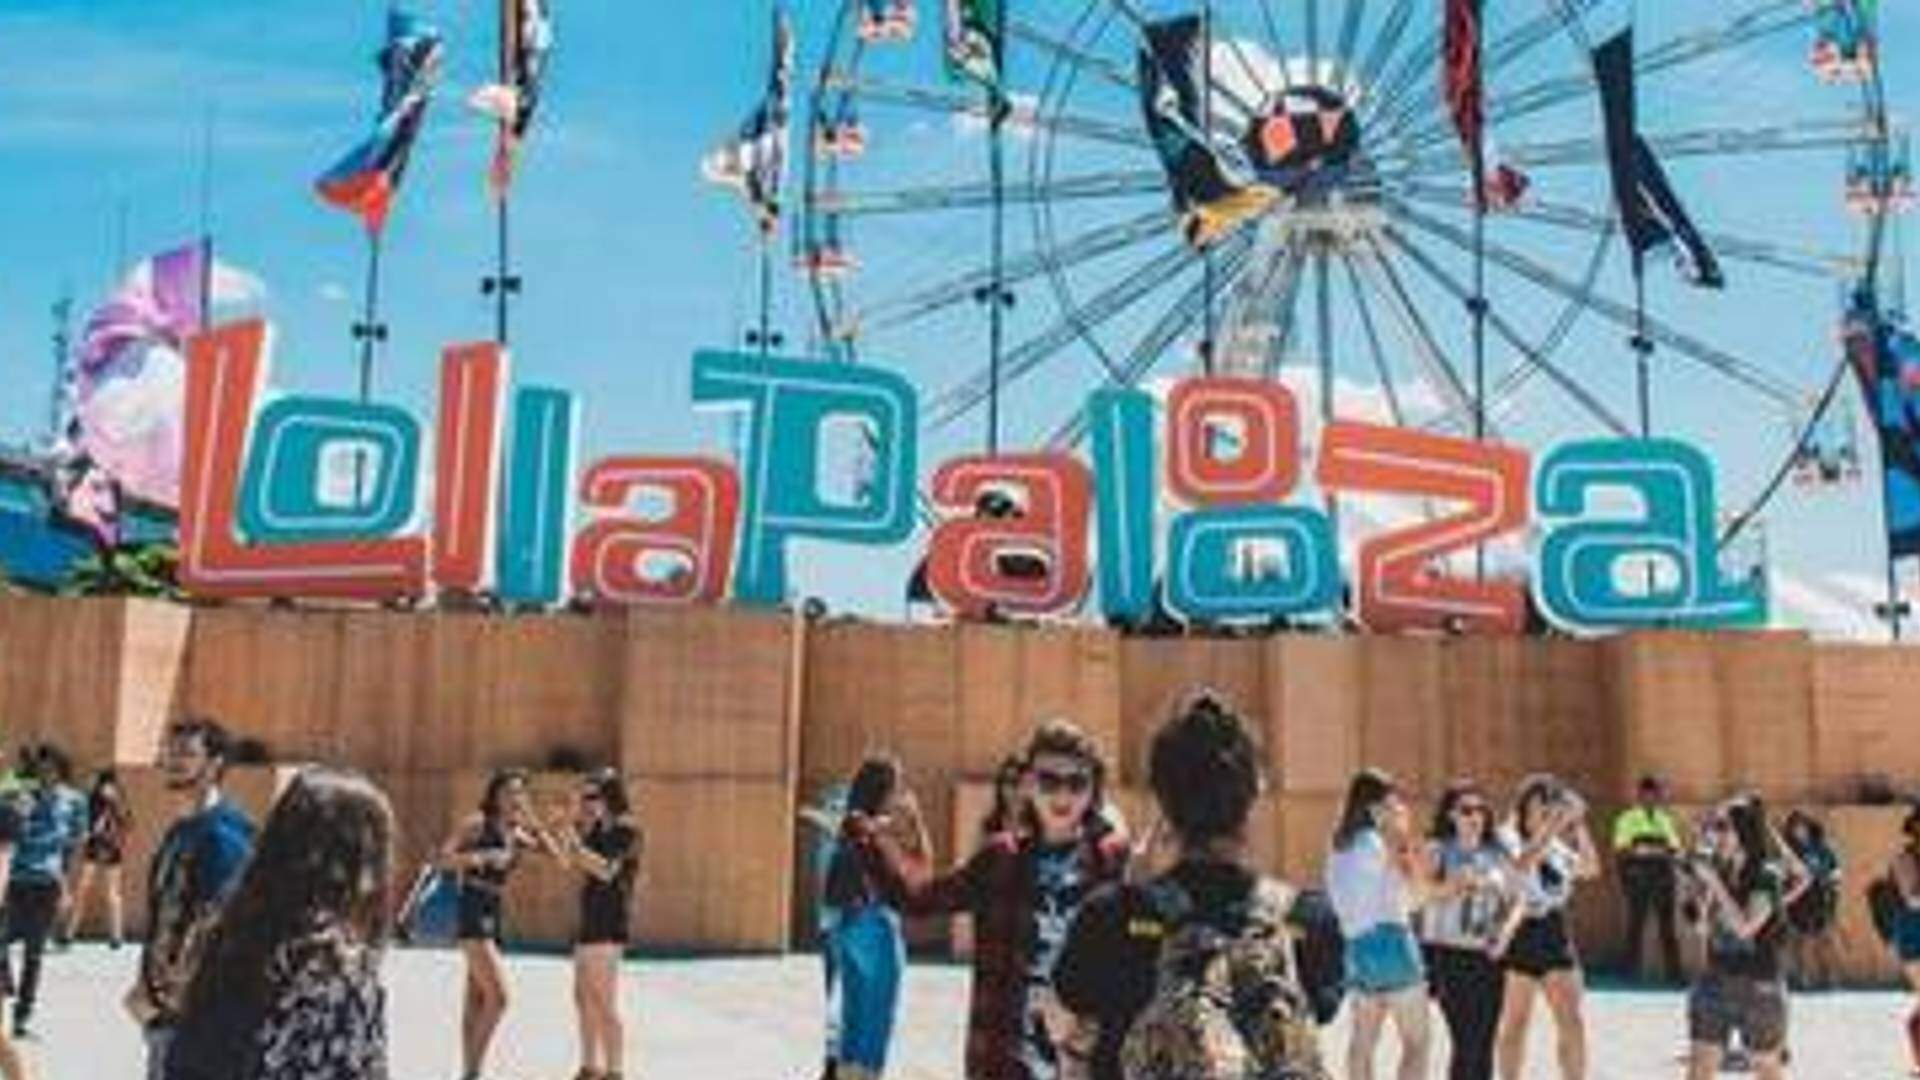 Lollapalooza Brasil 2022: festival gera curiosidade do público com vídeo: “Spoilerzinho”